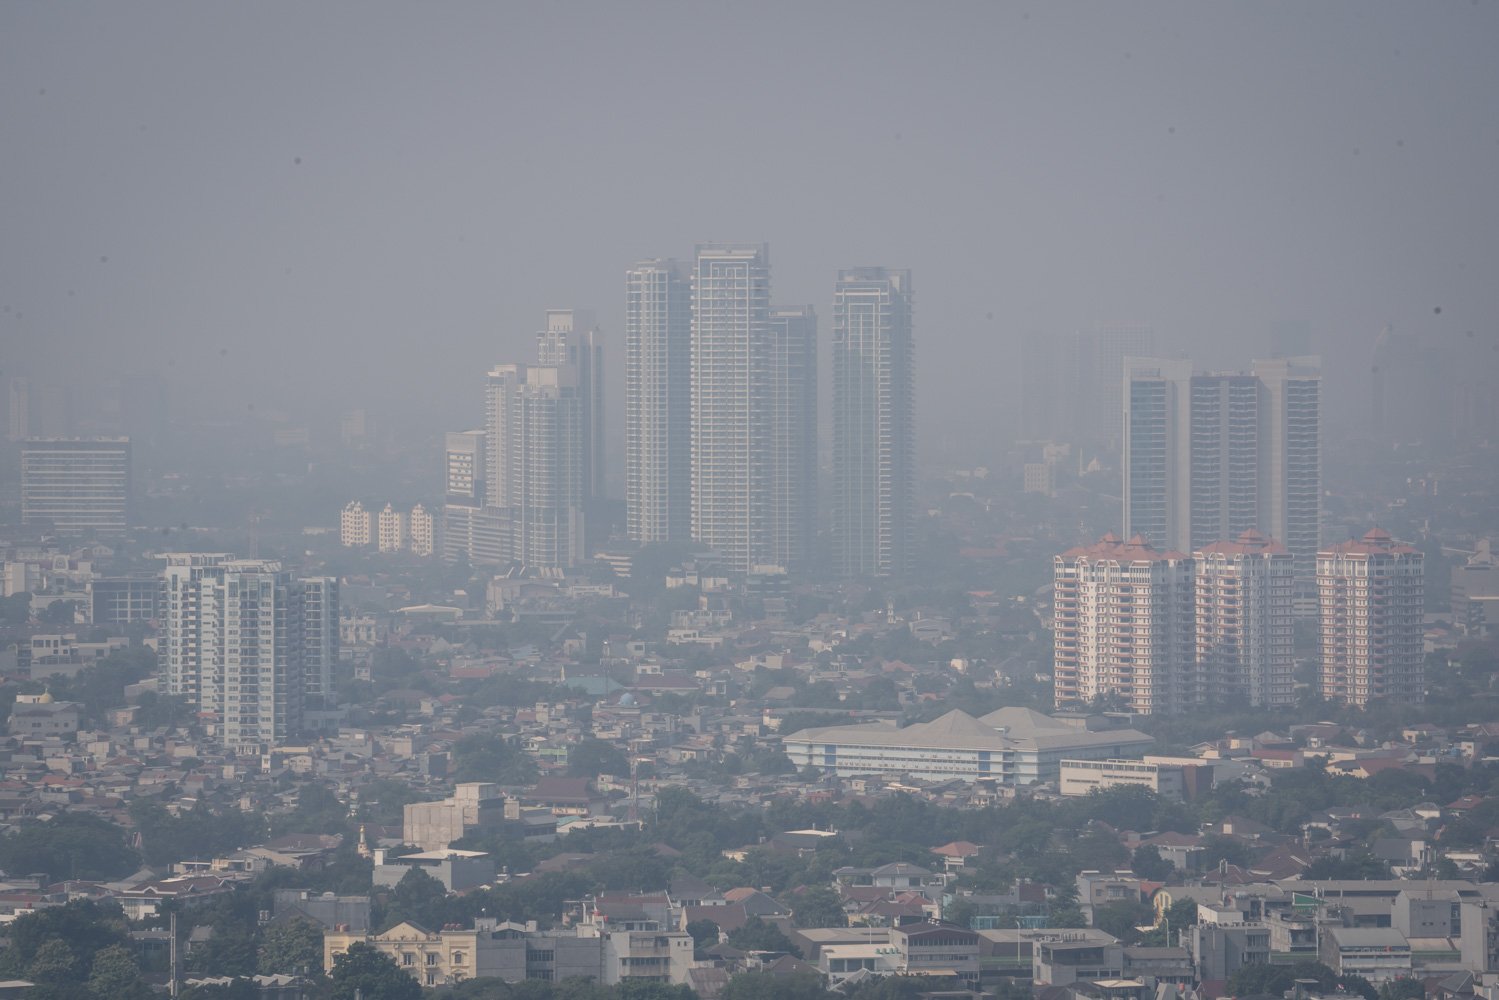 Lanskap suasana gedung diselimuti kabut polusi udara di Jakarta pada Selasa (22/8) masih buruk. Terbukti melalui pengukuran yang diterakan lewat website pemantau kualitas udara Iqair, indeks AQI US masih pada 172 dan bertanda merah. Sementara polutan utama pada PM2.5 sebagaimana dikases pada pukul 08.19 WIB.\r\n\r\n